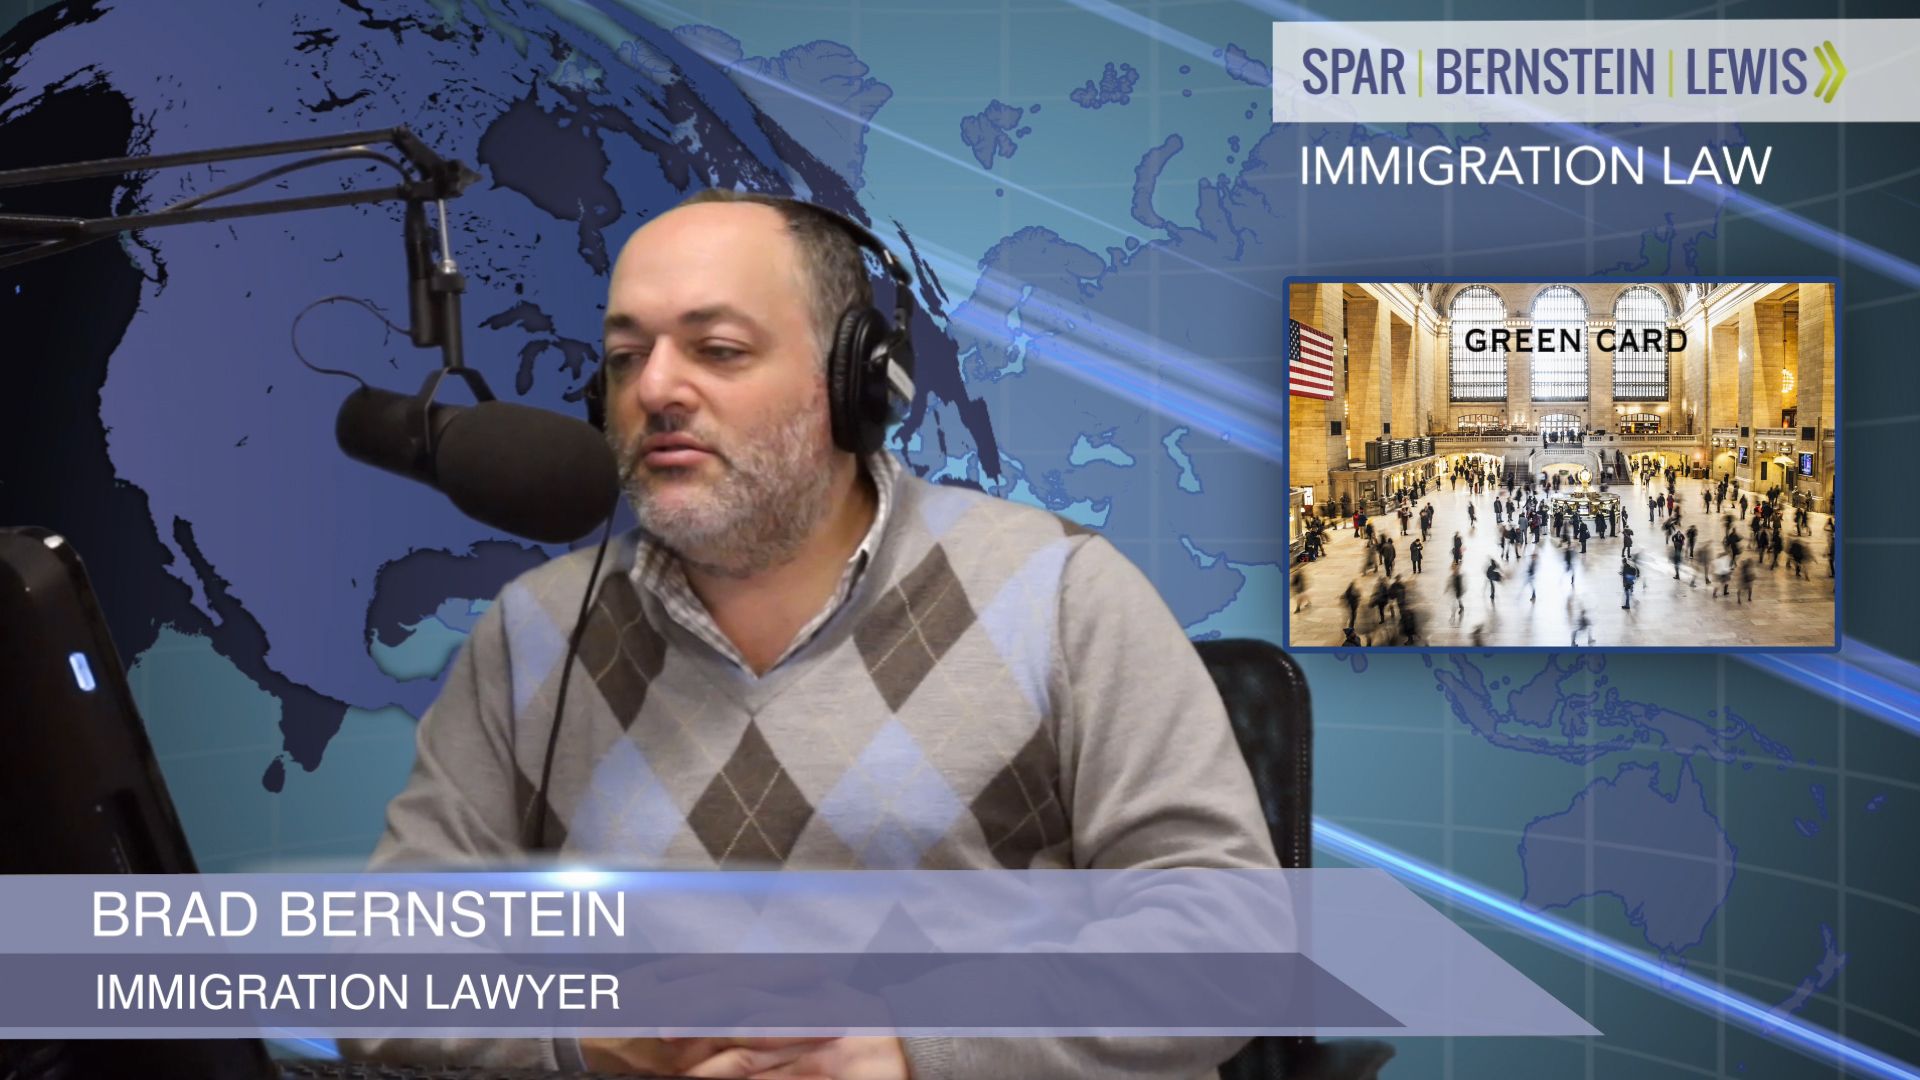 Brad bernstein immigration lawyer